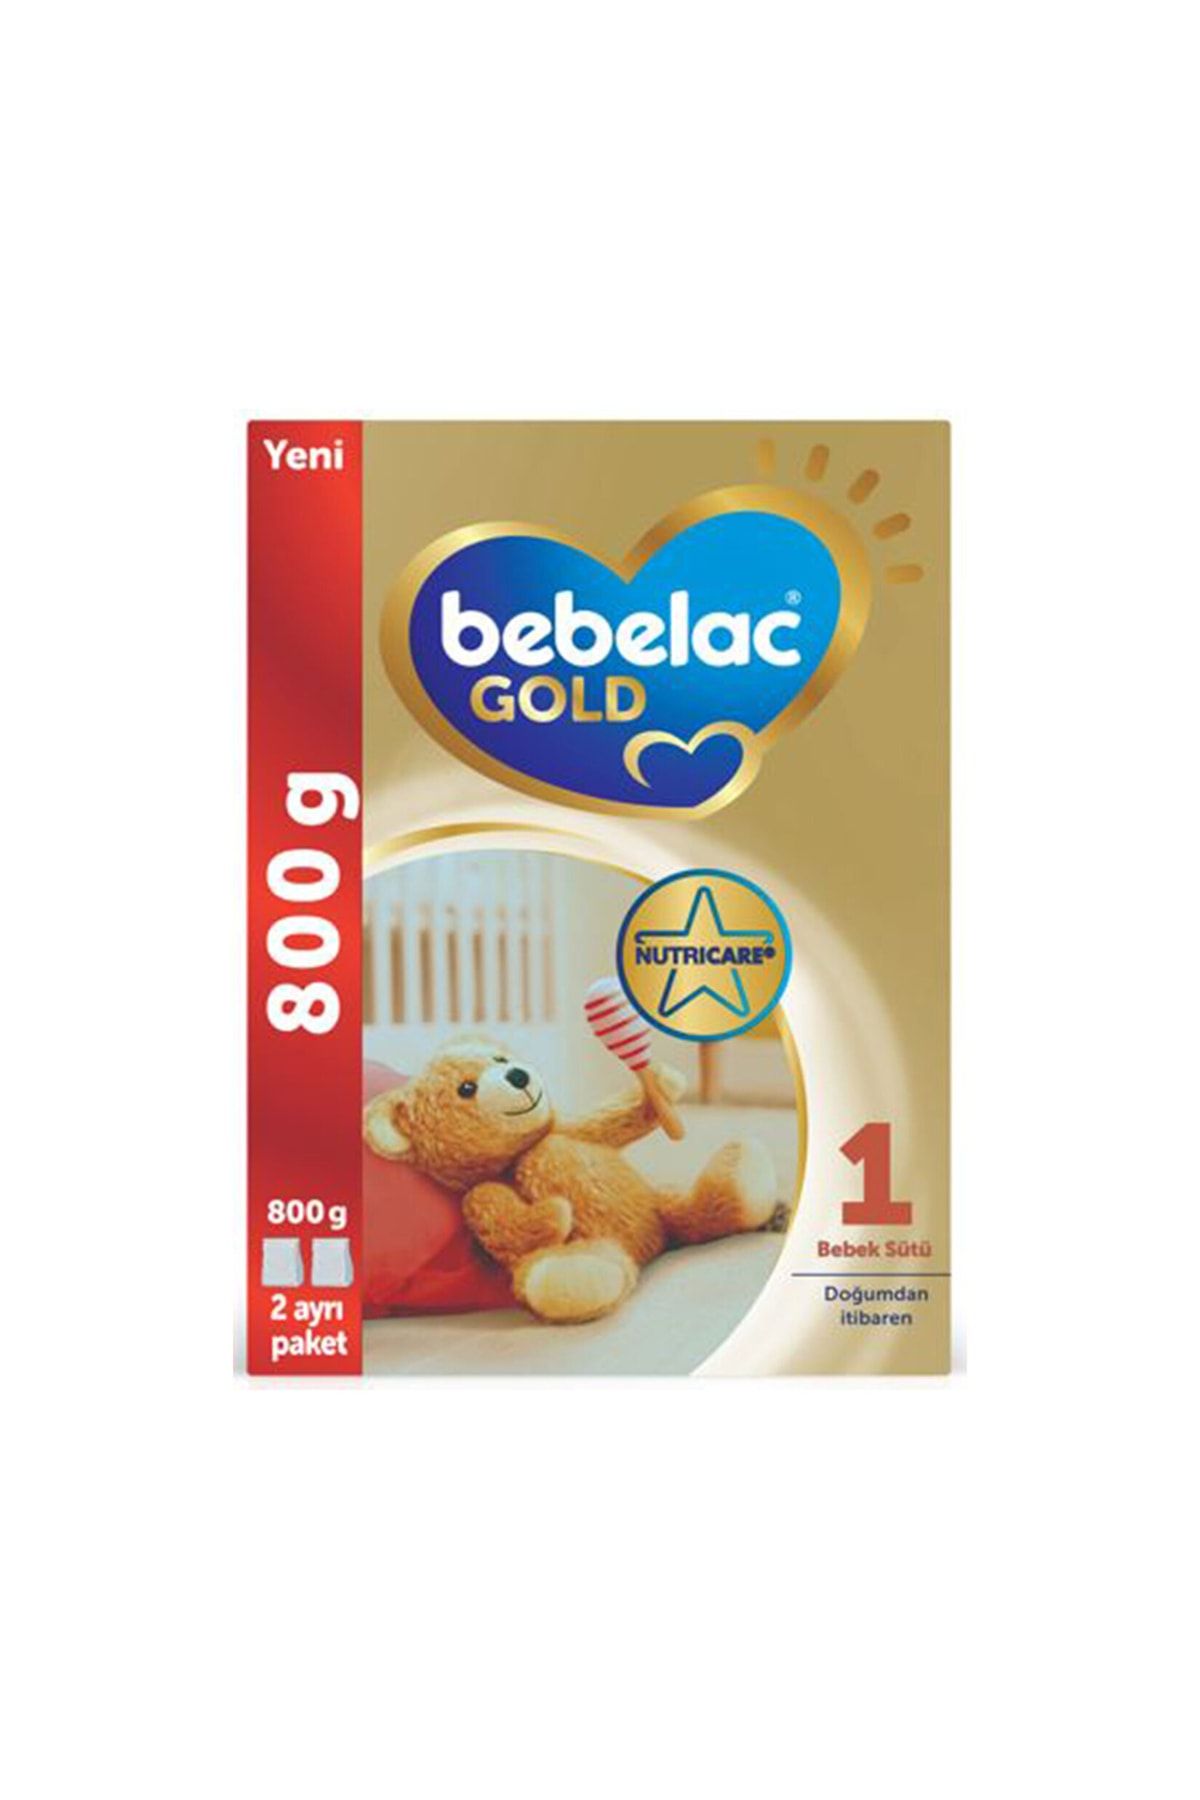 Bebelac Gold Devam Sütü 1 800g